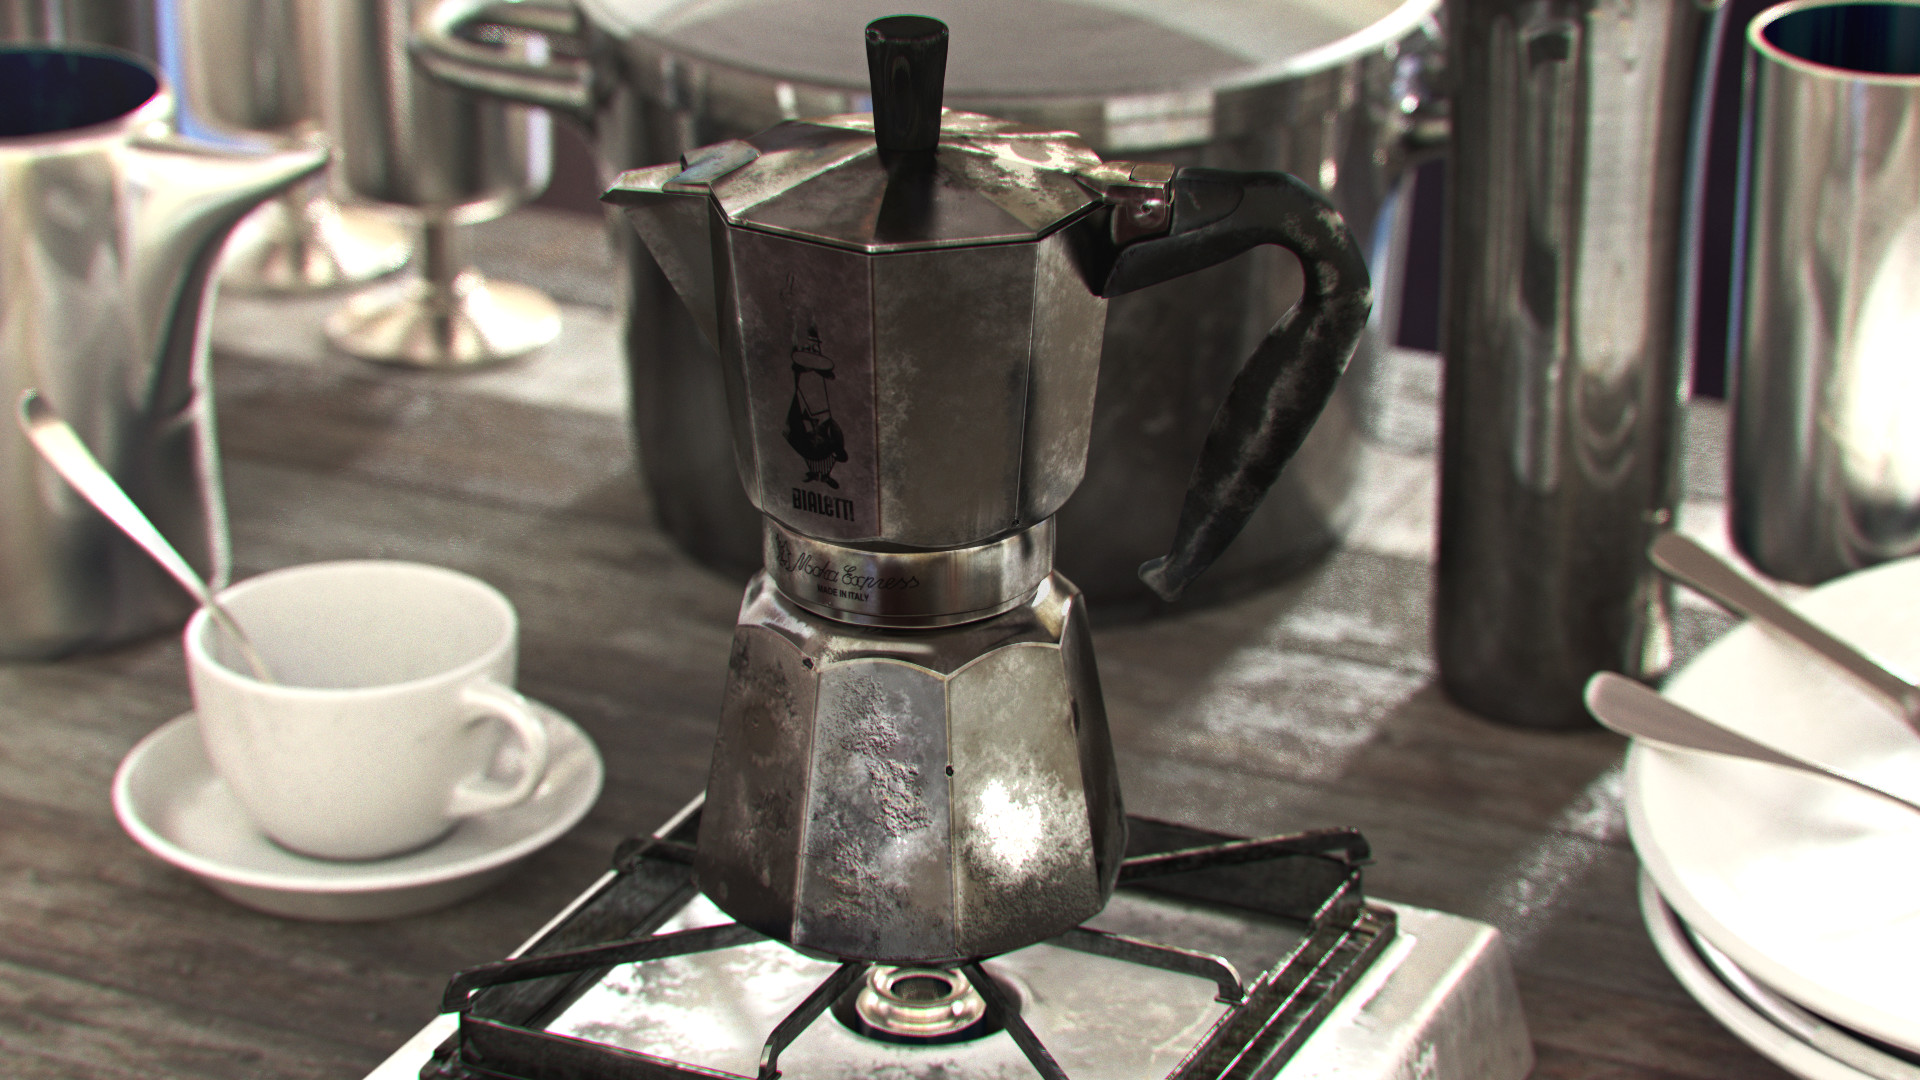 Гейзерная кофеварка как варить кофе на газу. Moka Express Bialetti 1933. Электрический кофейник для варки кофе. Советская кофеварка гейзерного типа. Гейзерная кофеварка старинная.